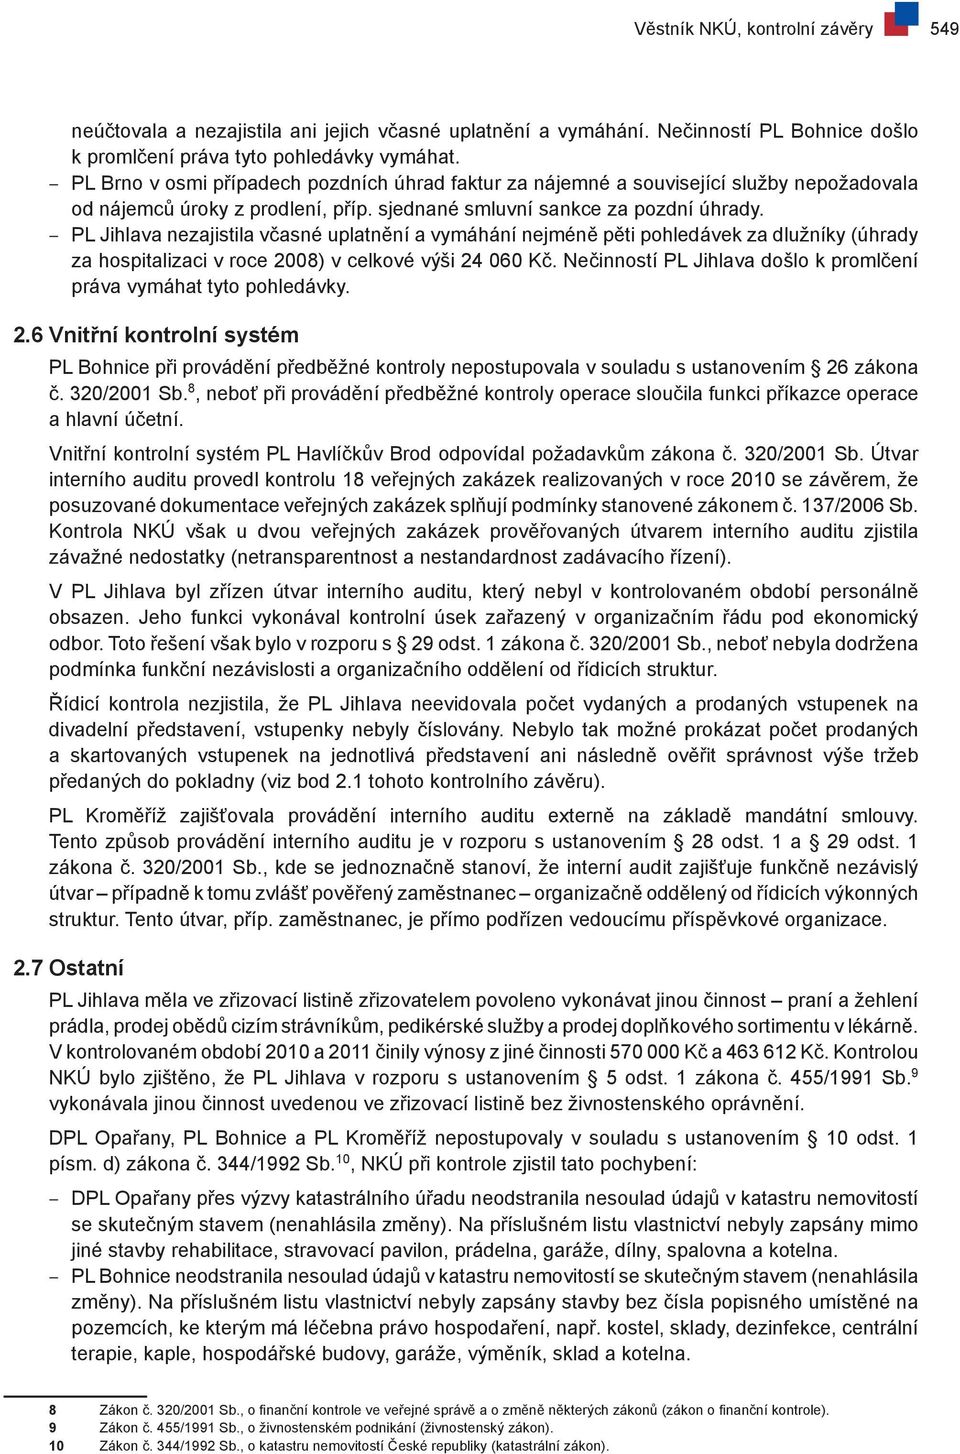 PL Jihlava nezajistila včasné uplatnění a vymáhání nejméně pěti pohledávek za dlužníky (úhrady za hospitalizaci v roce 2008) v celkové výši 24 060 Kč.